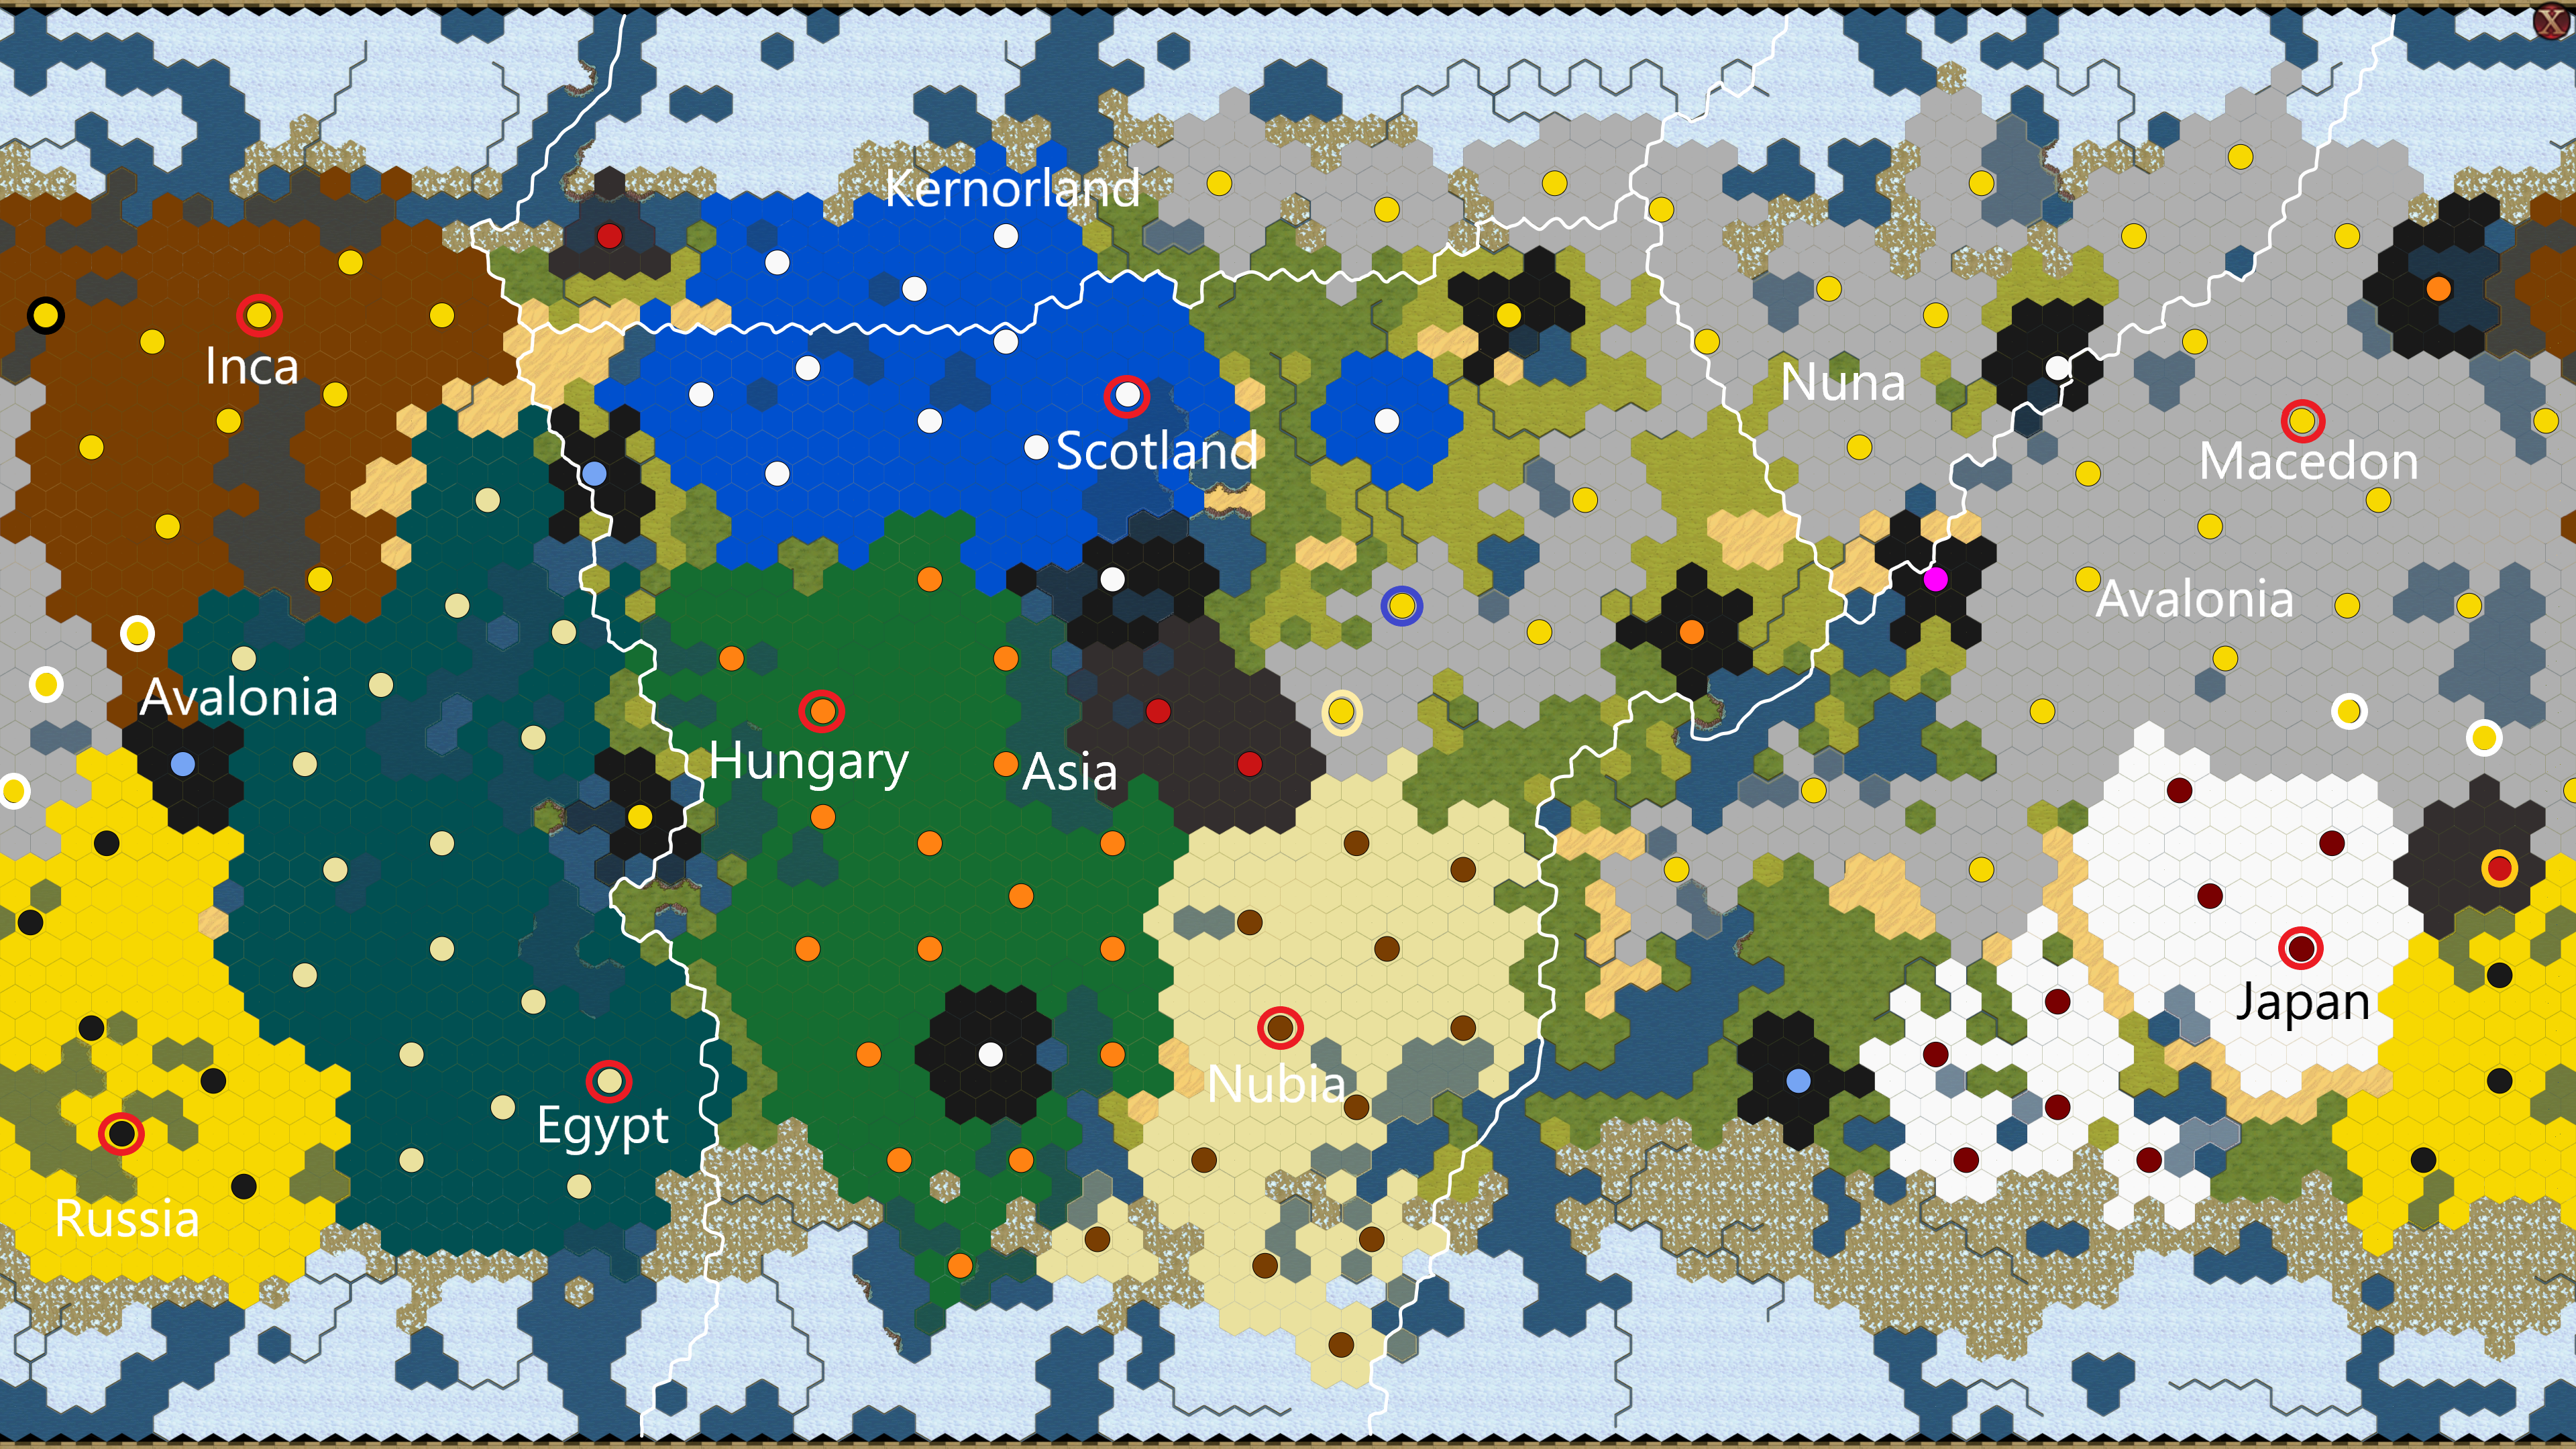 Macedon mini-map